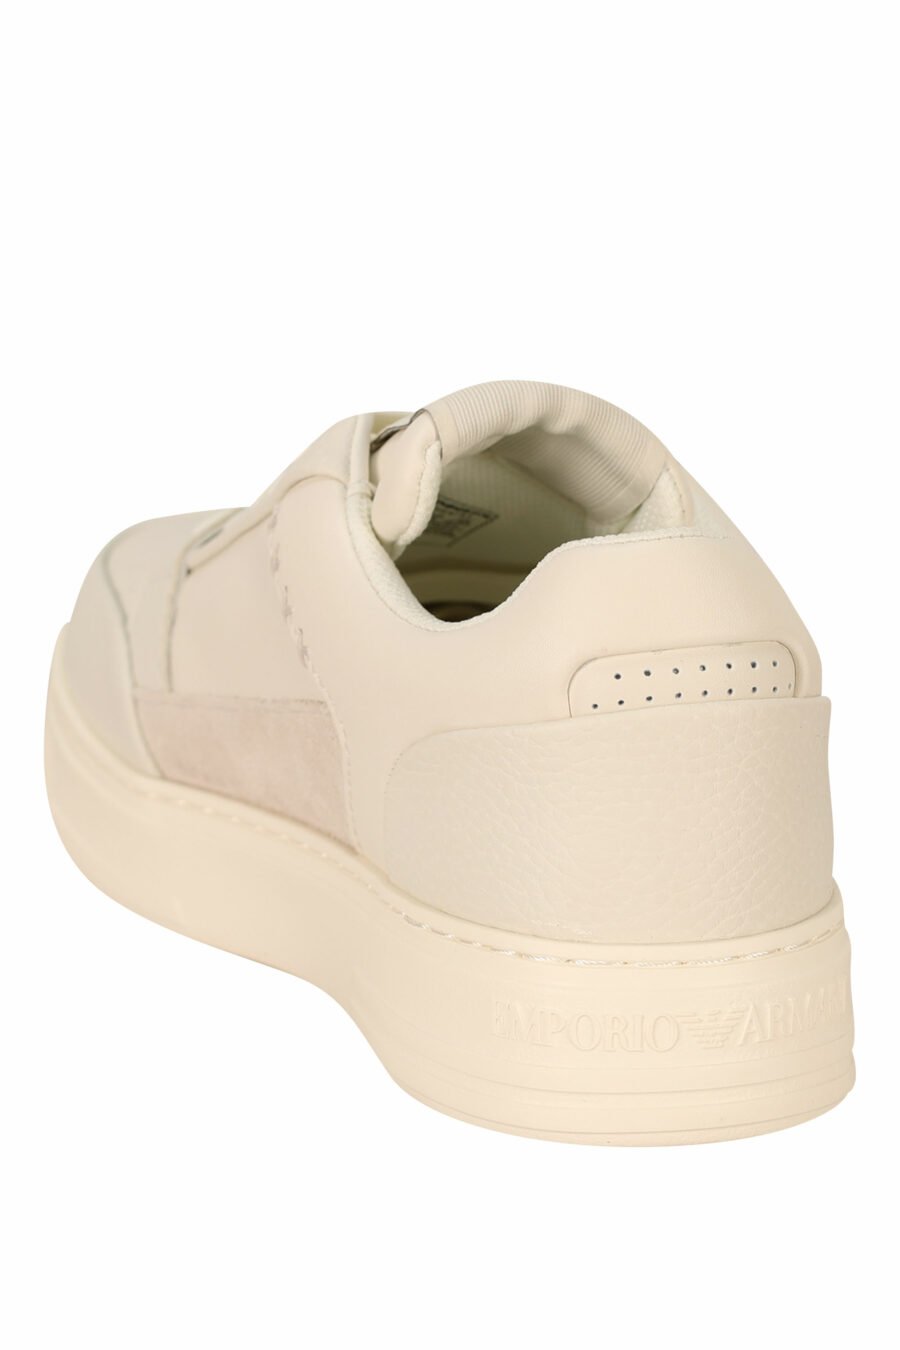 Zapatillas blancas mix con beige y minilogo en goma - 8058947169122 3